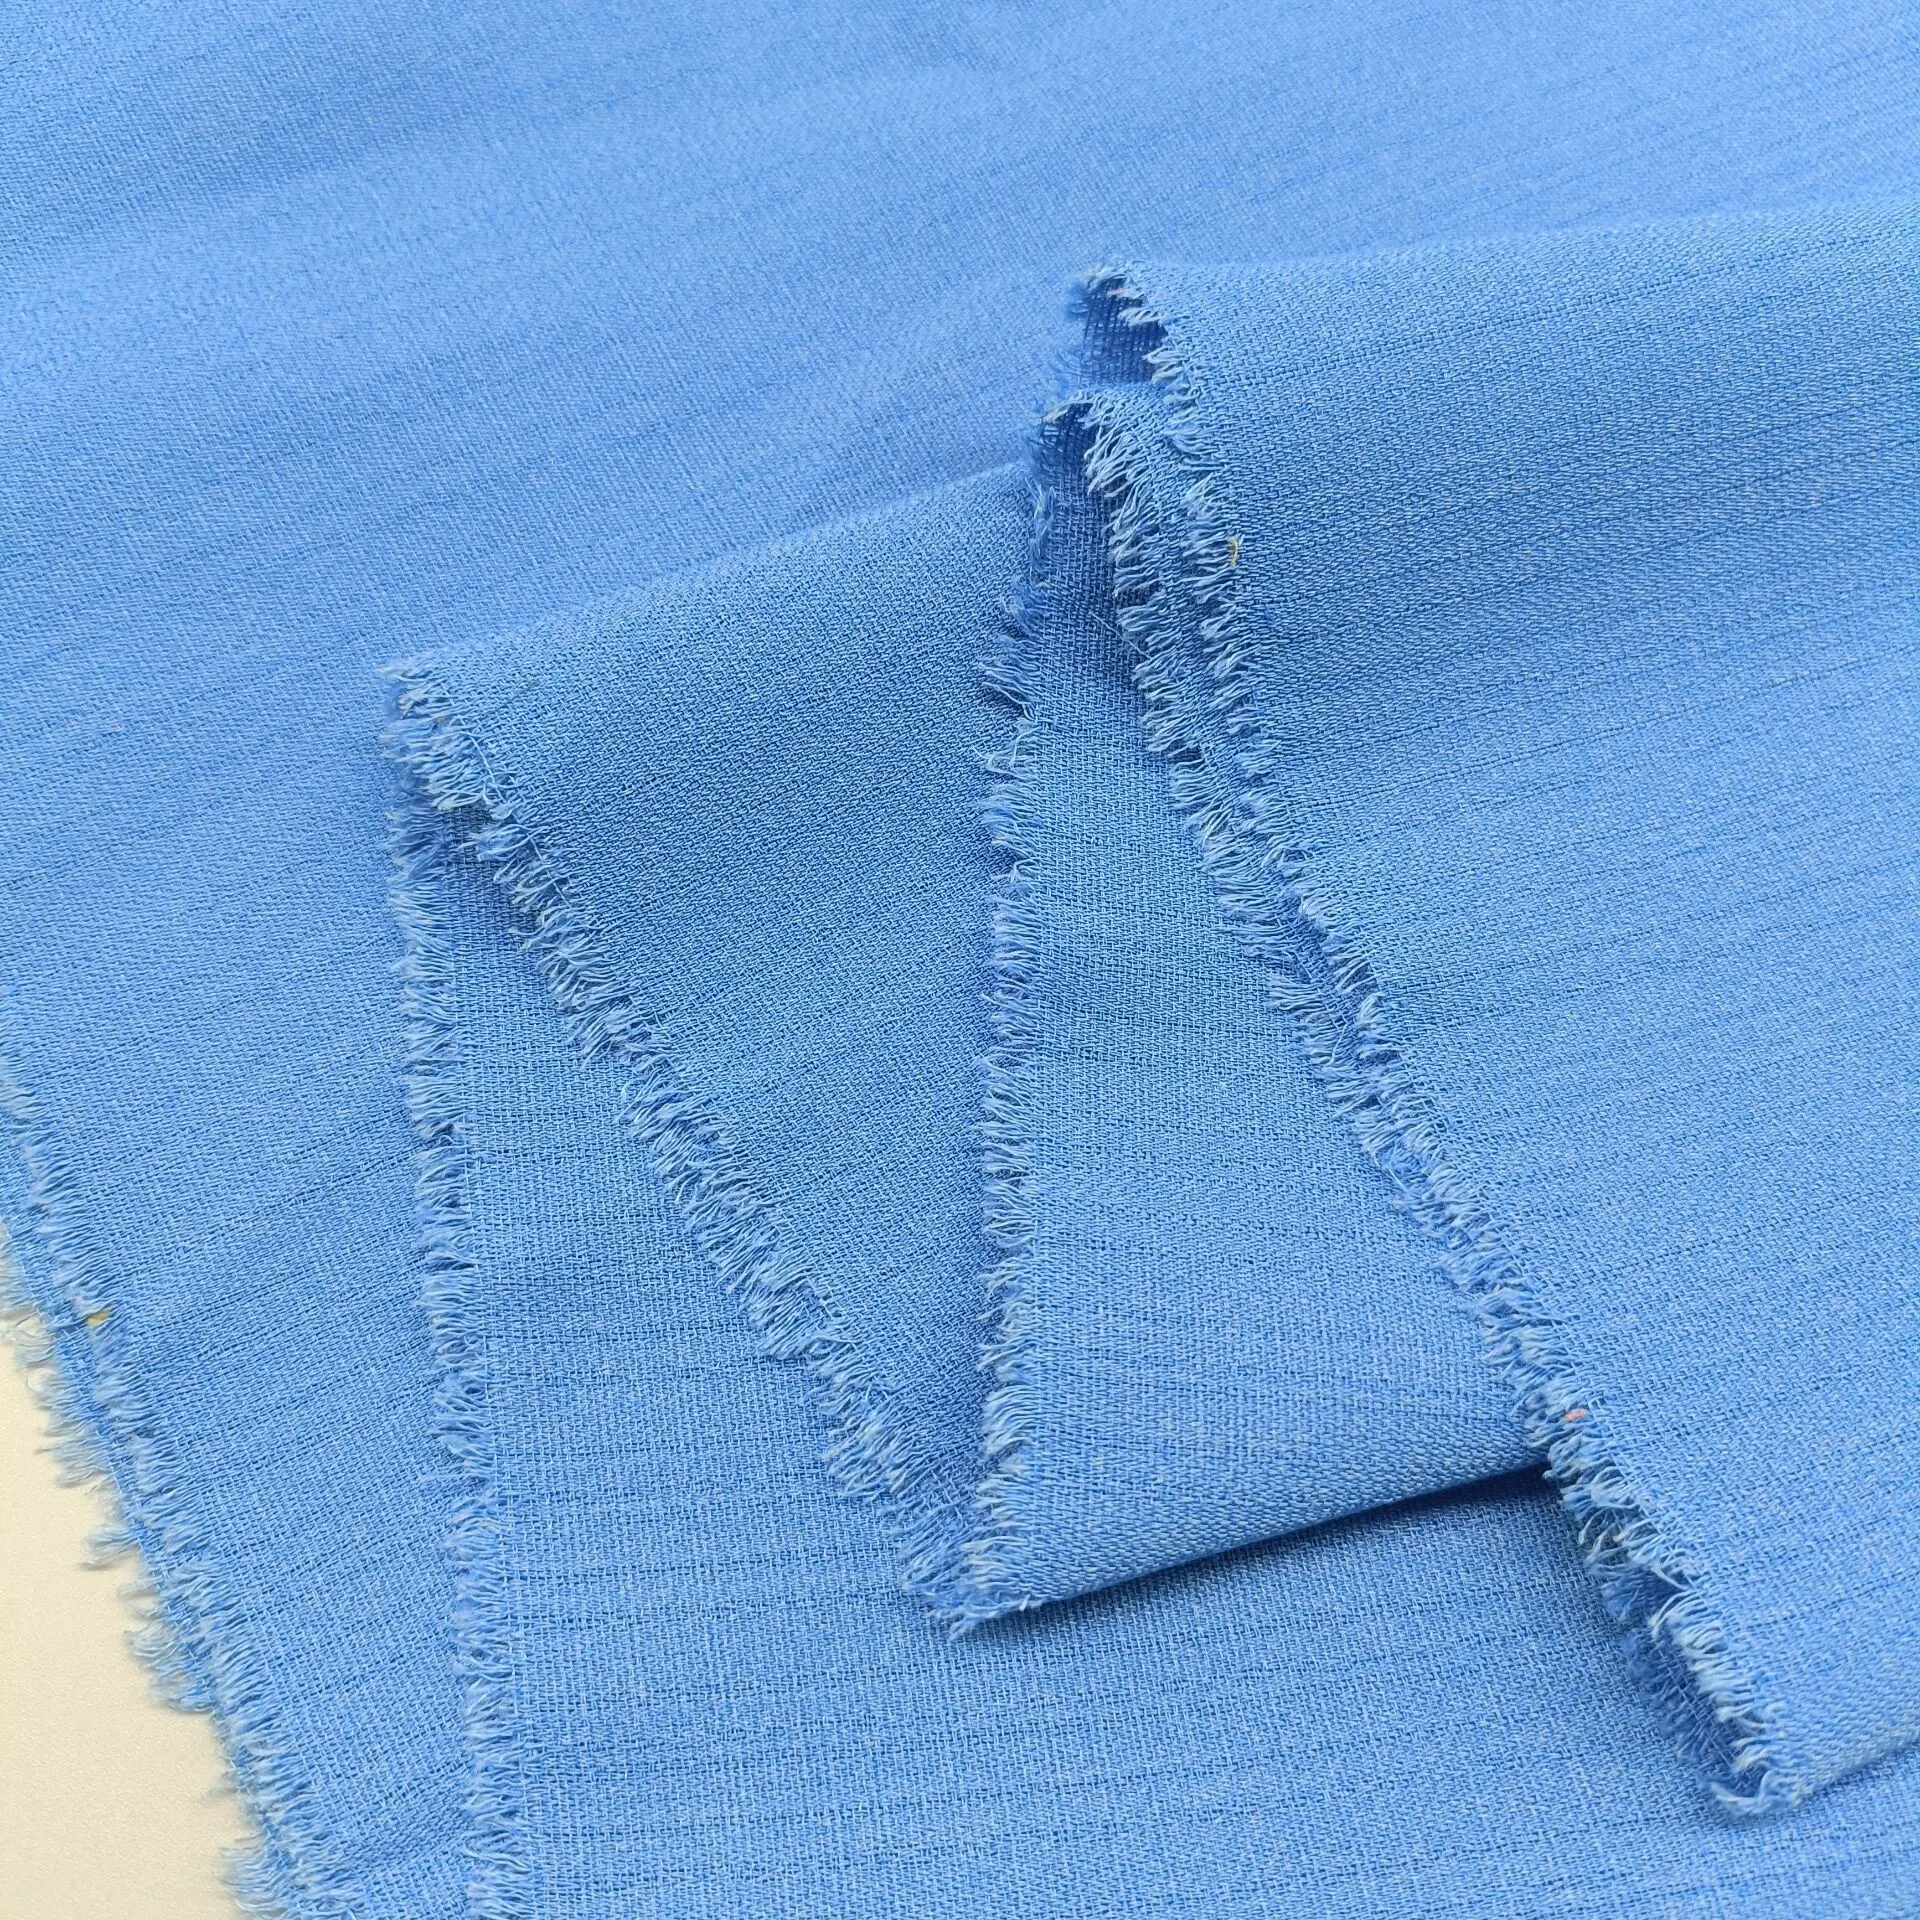 Linen dệt vải cho hàng may mặc đa màu vải Polyester jacquard vải